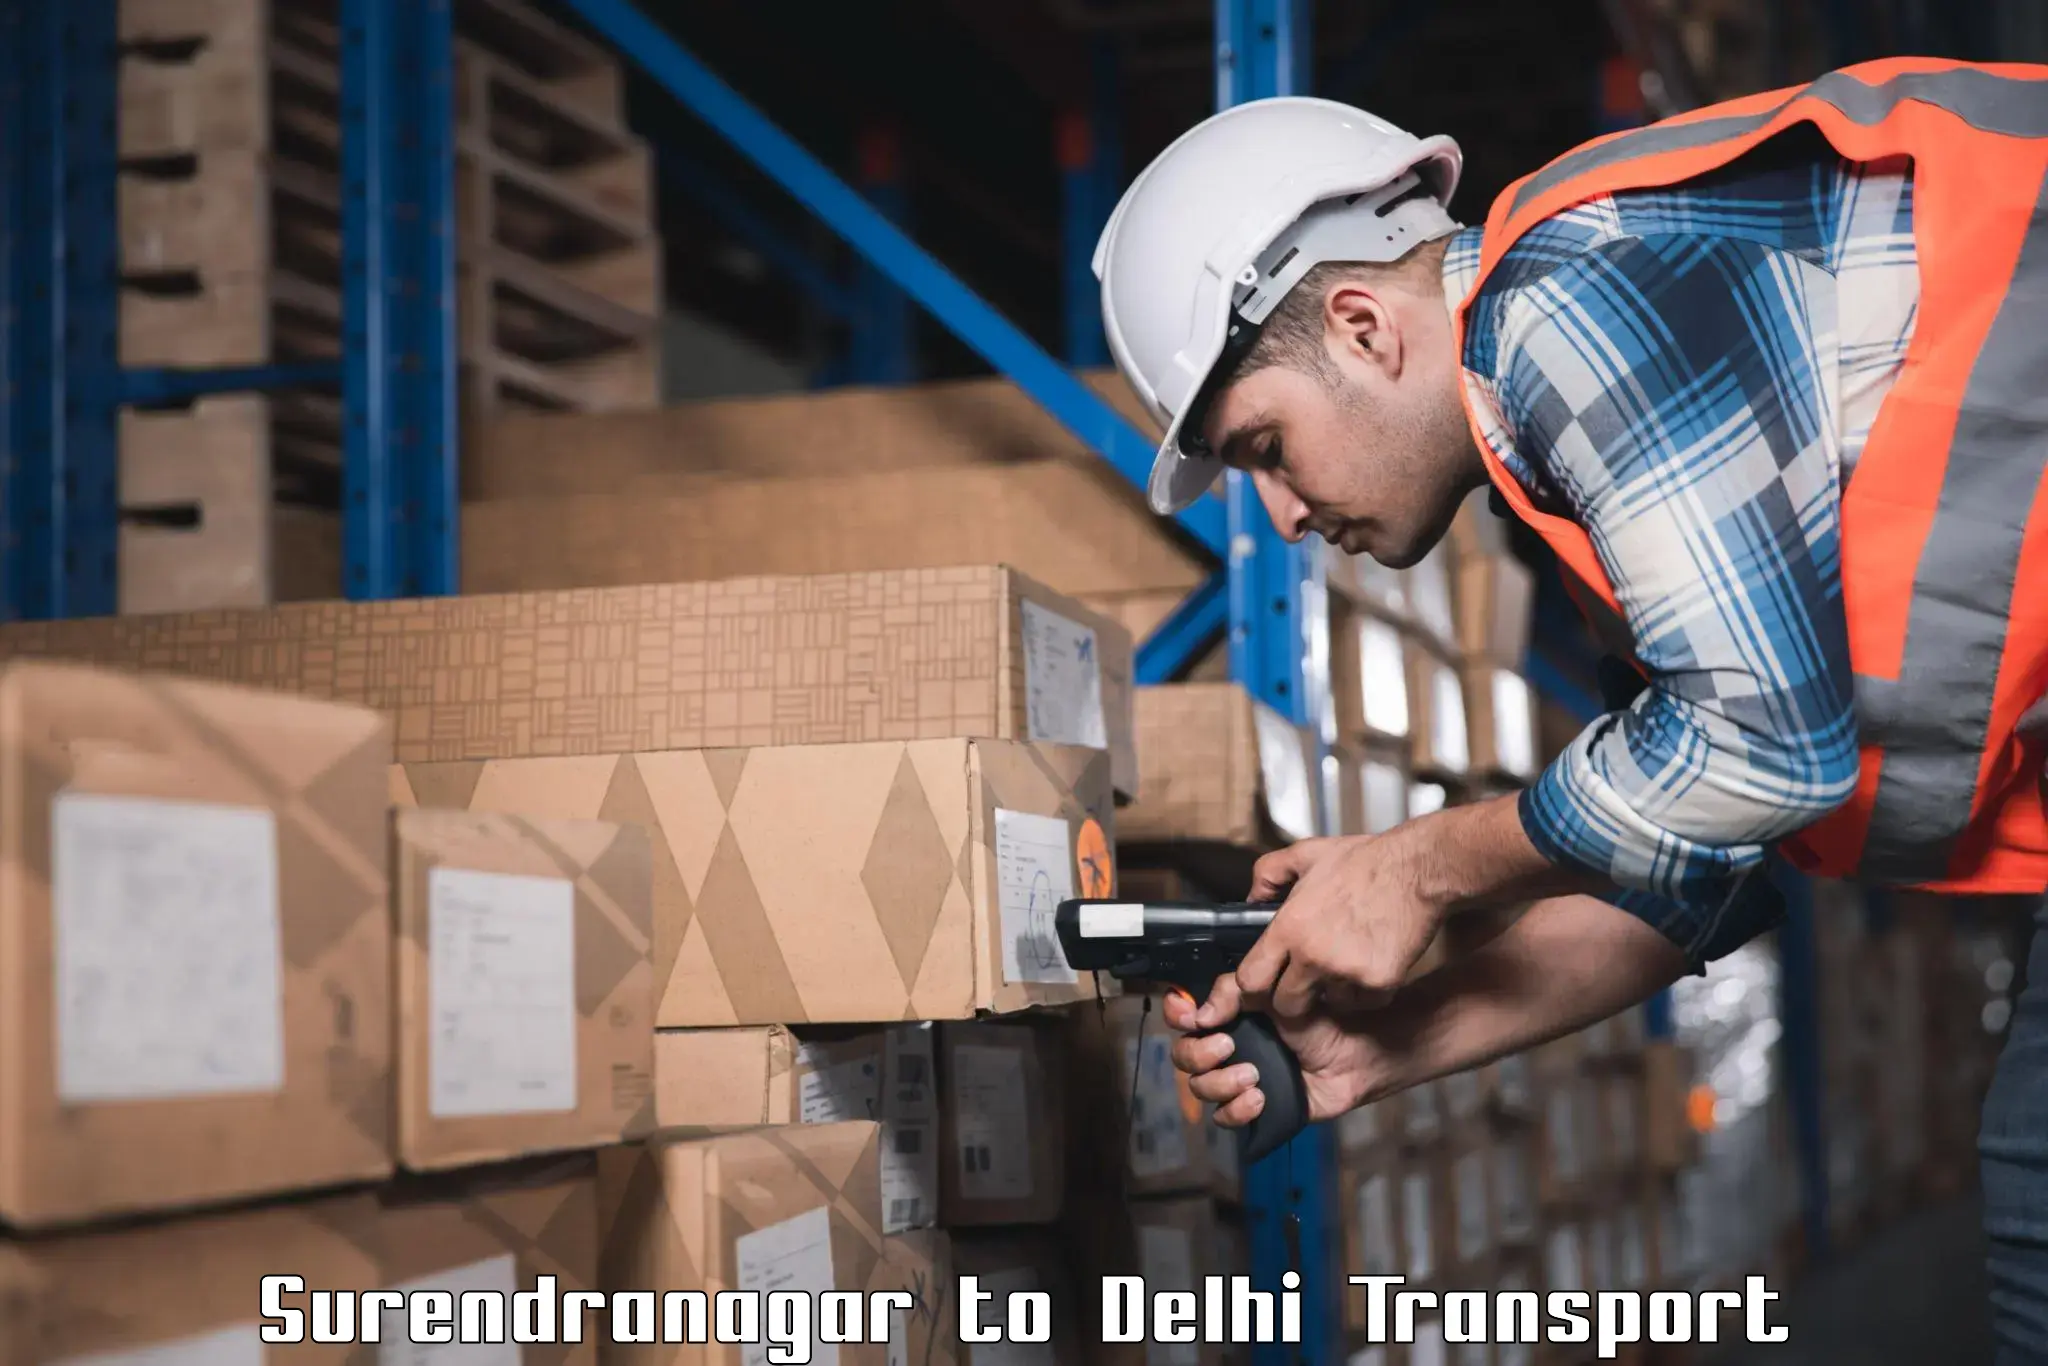 Furniture transport service Surendranagar to University of Delhi